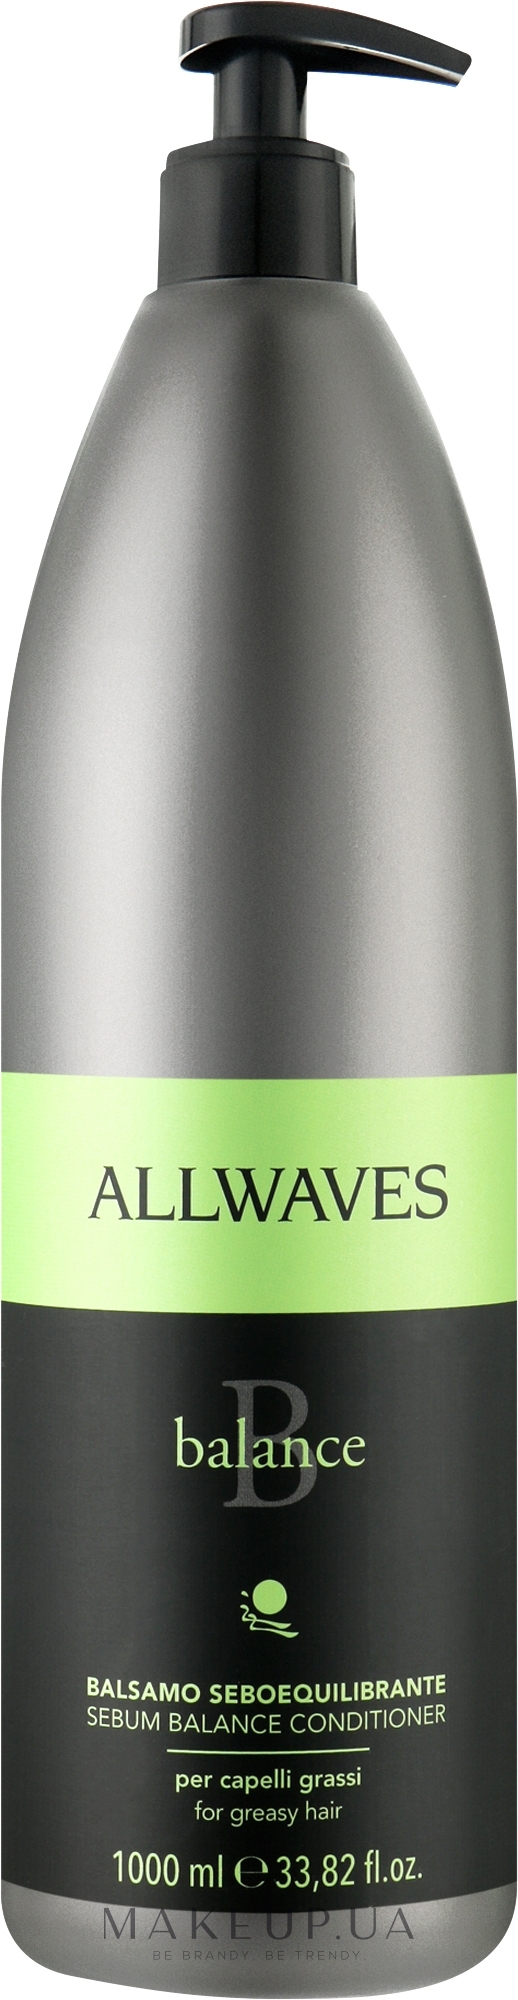 Кондиціонер для жирного волосся - Allwavs Balance Sebum Balancing Conditioner — фото 1000ml